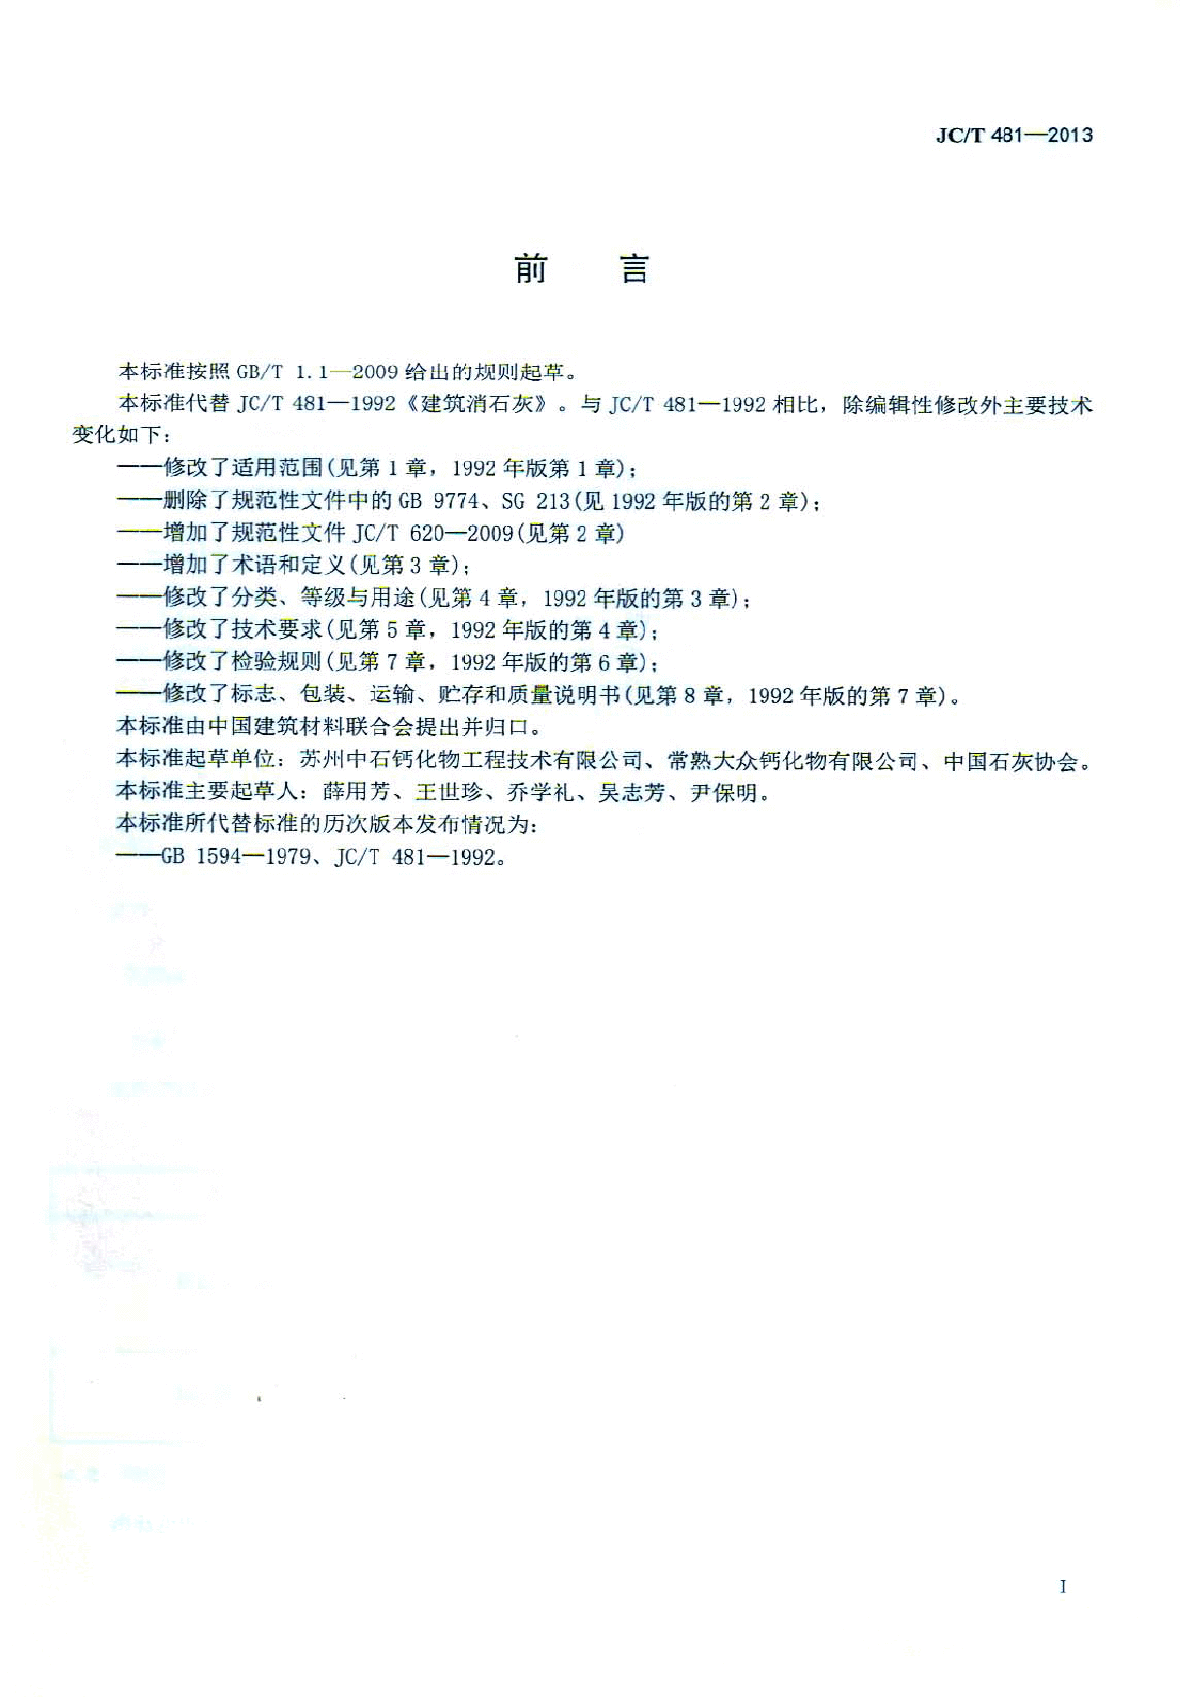 JCT481-2013建筑消石灰-图二